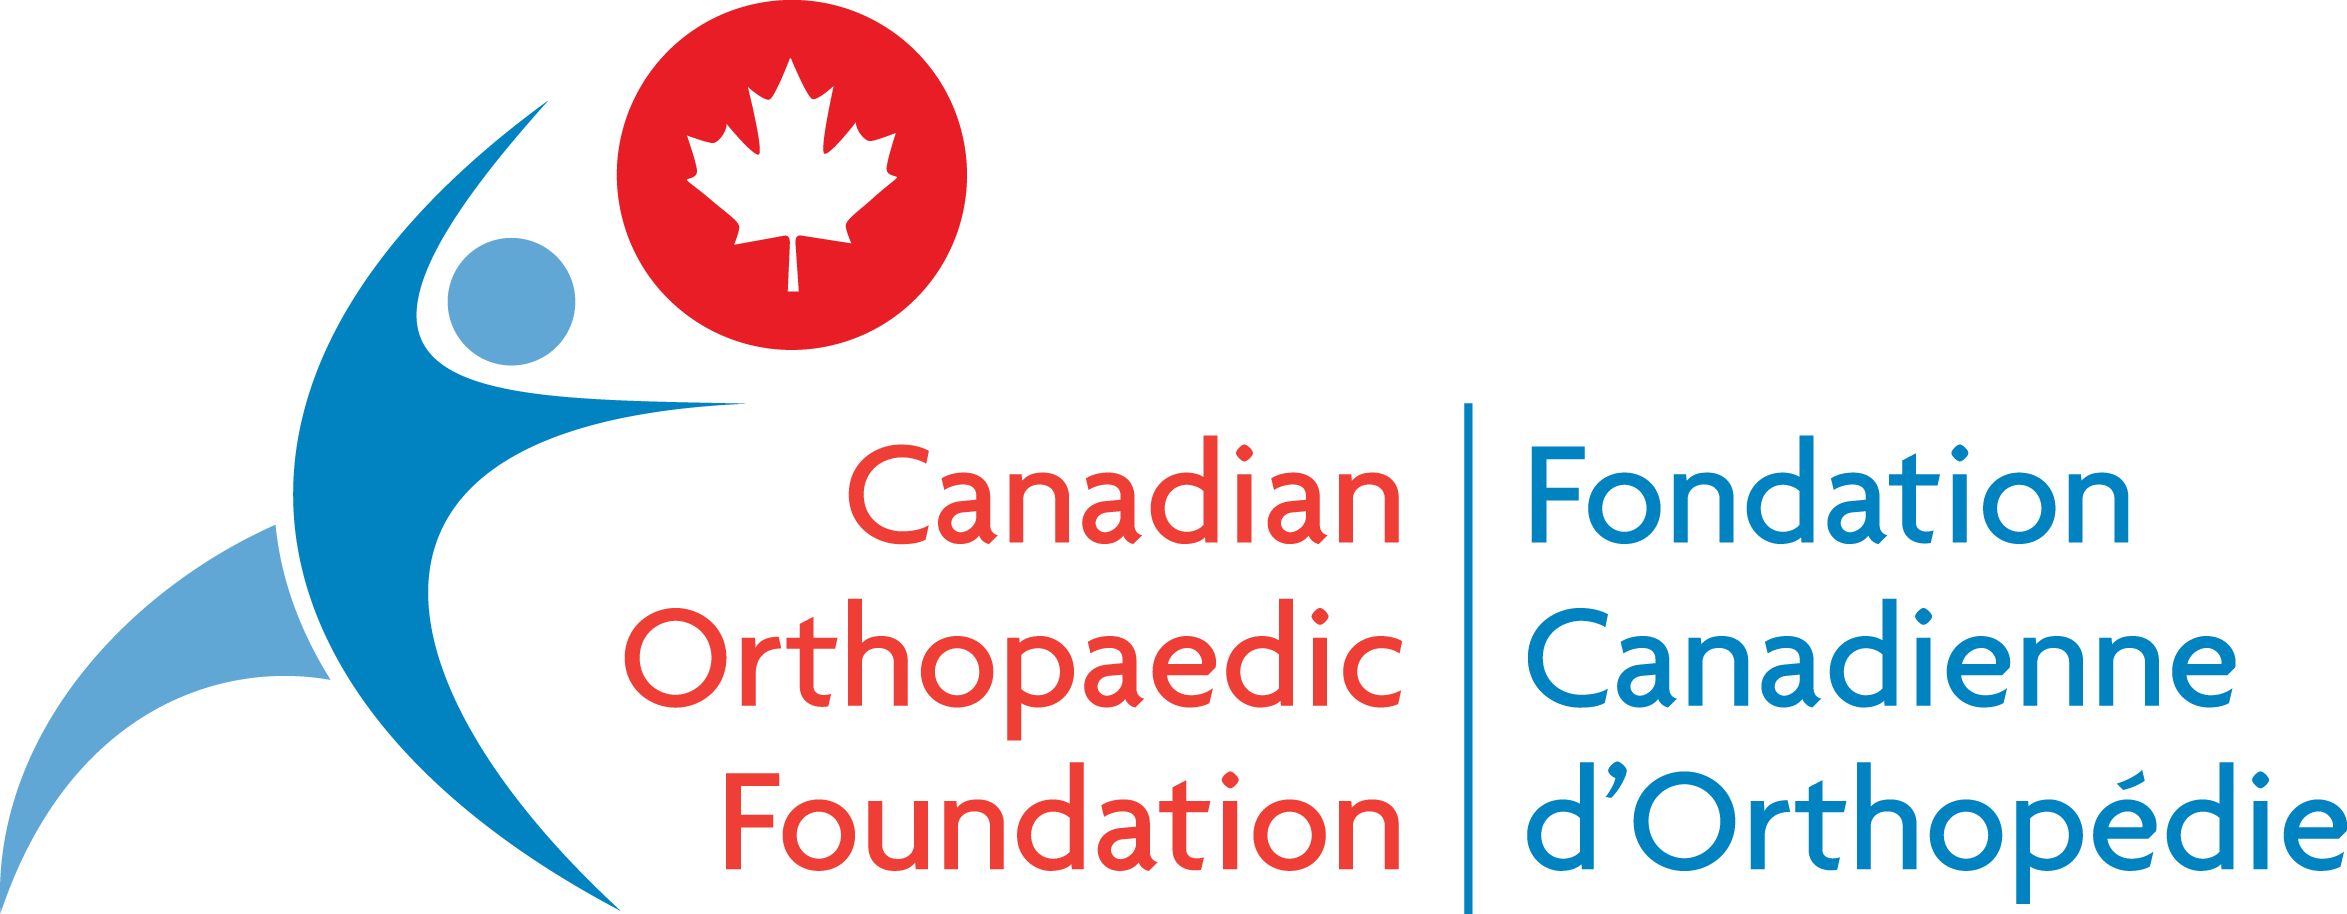 Canadian Orthopaedic Foundation Logo